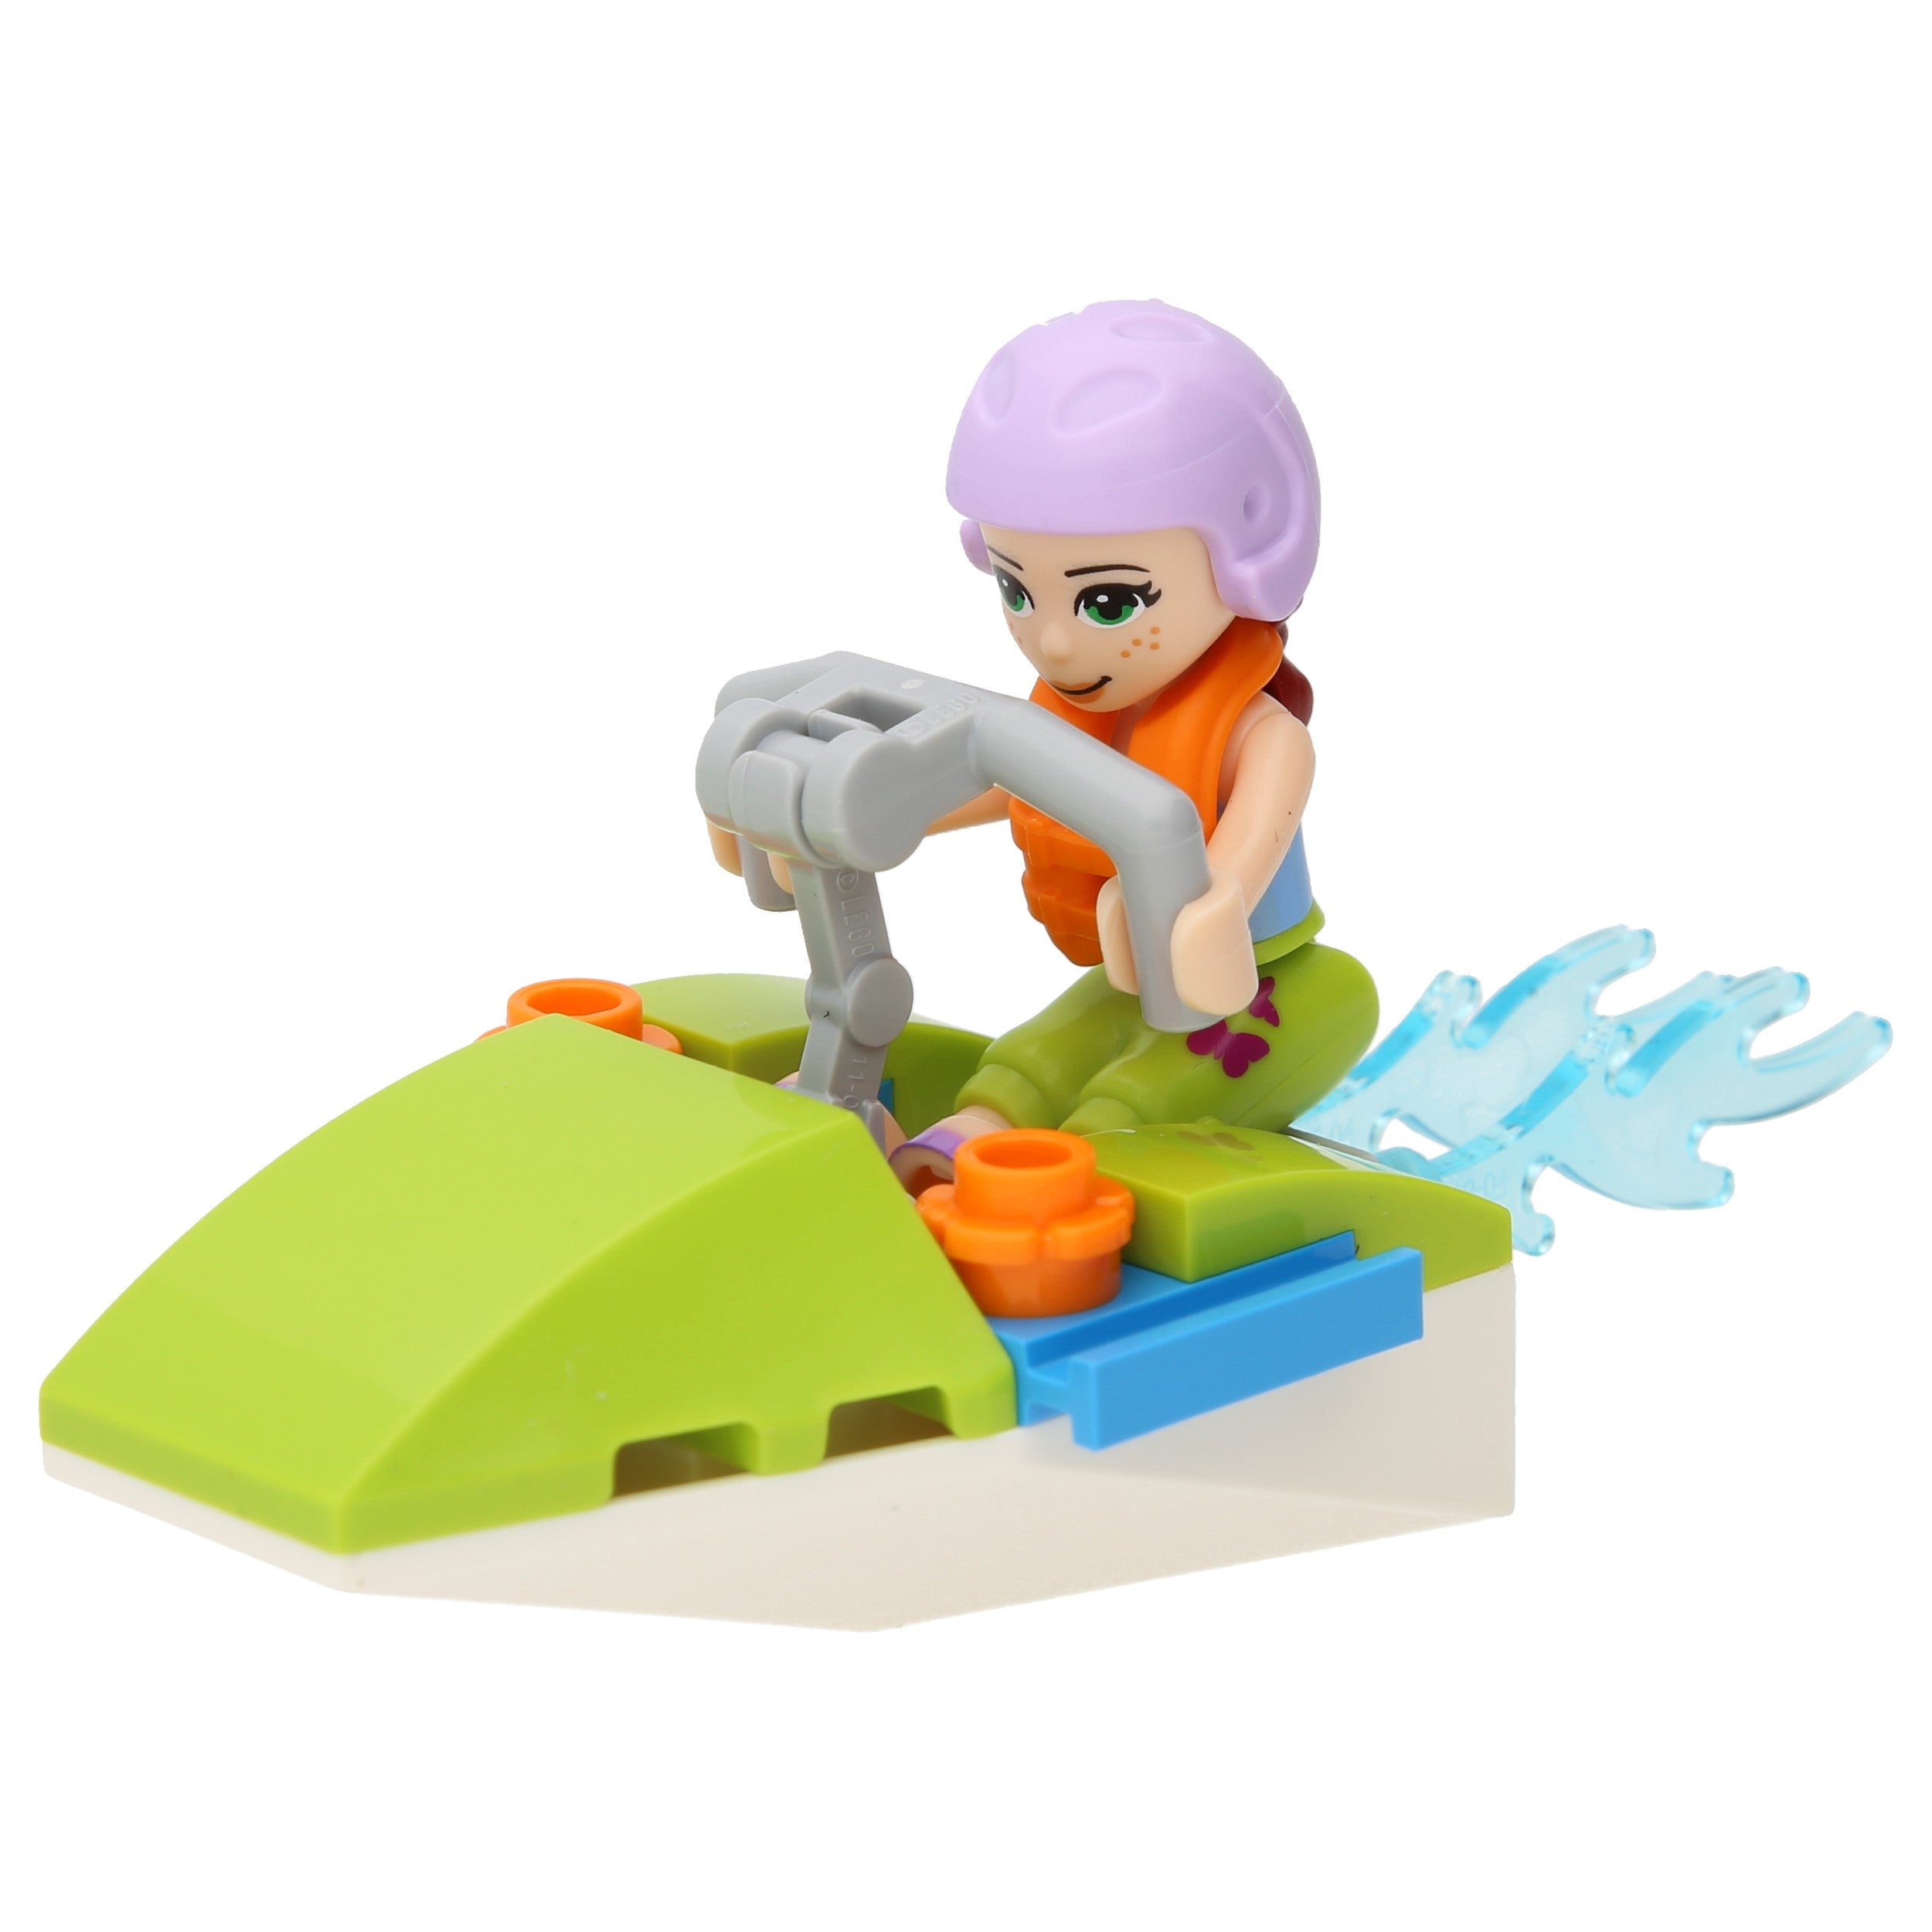 LEGO Friends Bausätze - Mias Wasserspaß (Polybag)